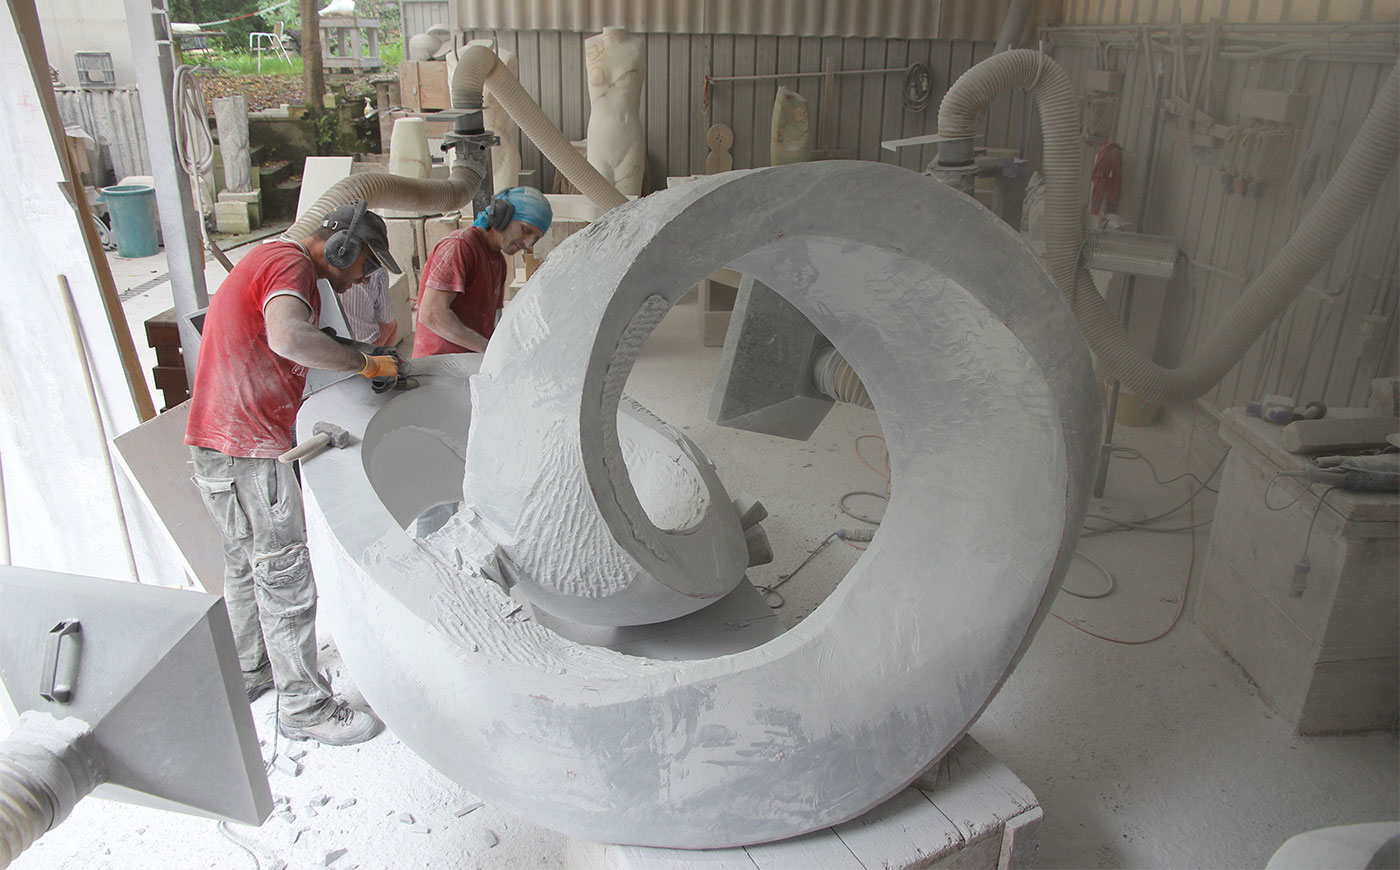 Richard Erdman modern sculpture marble process